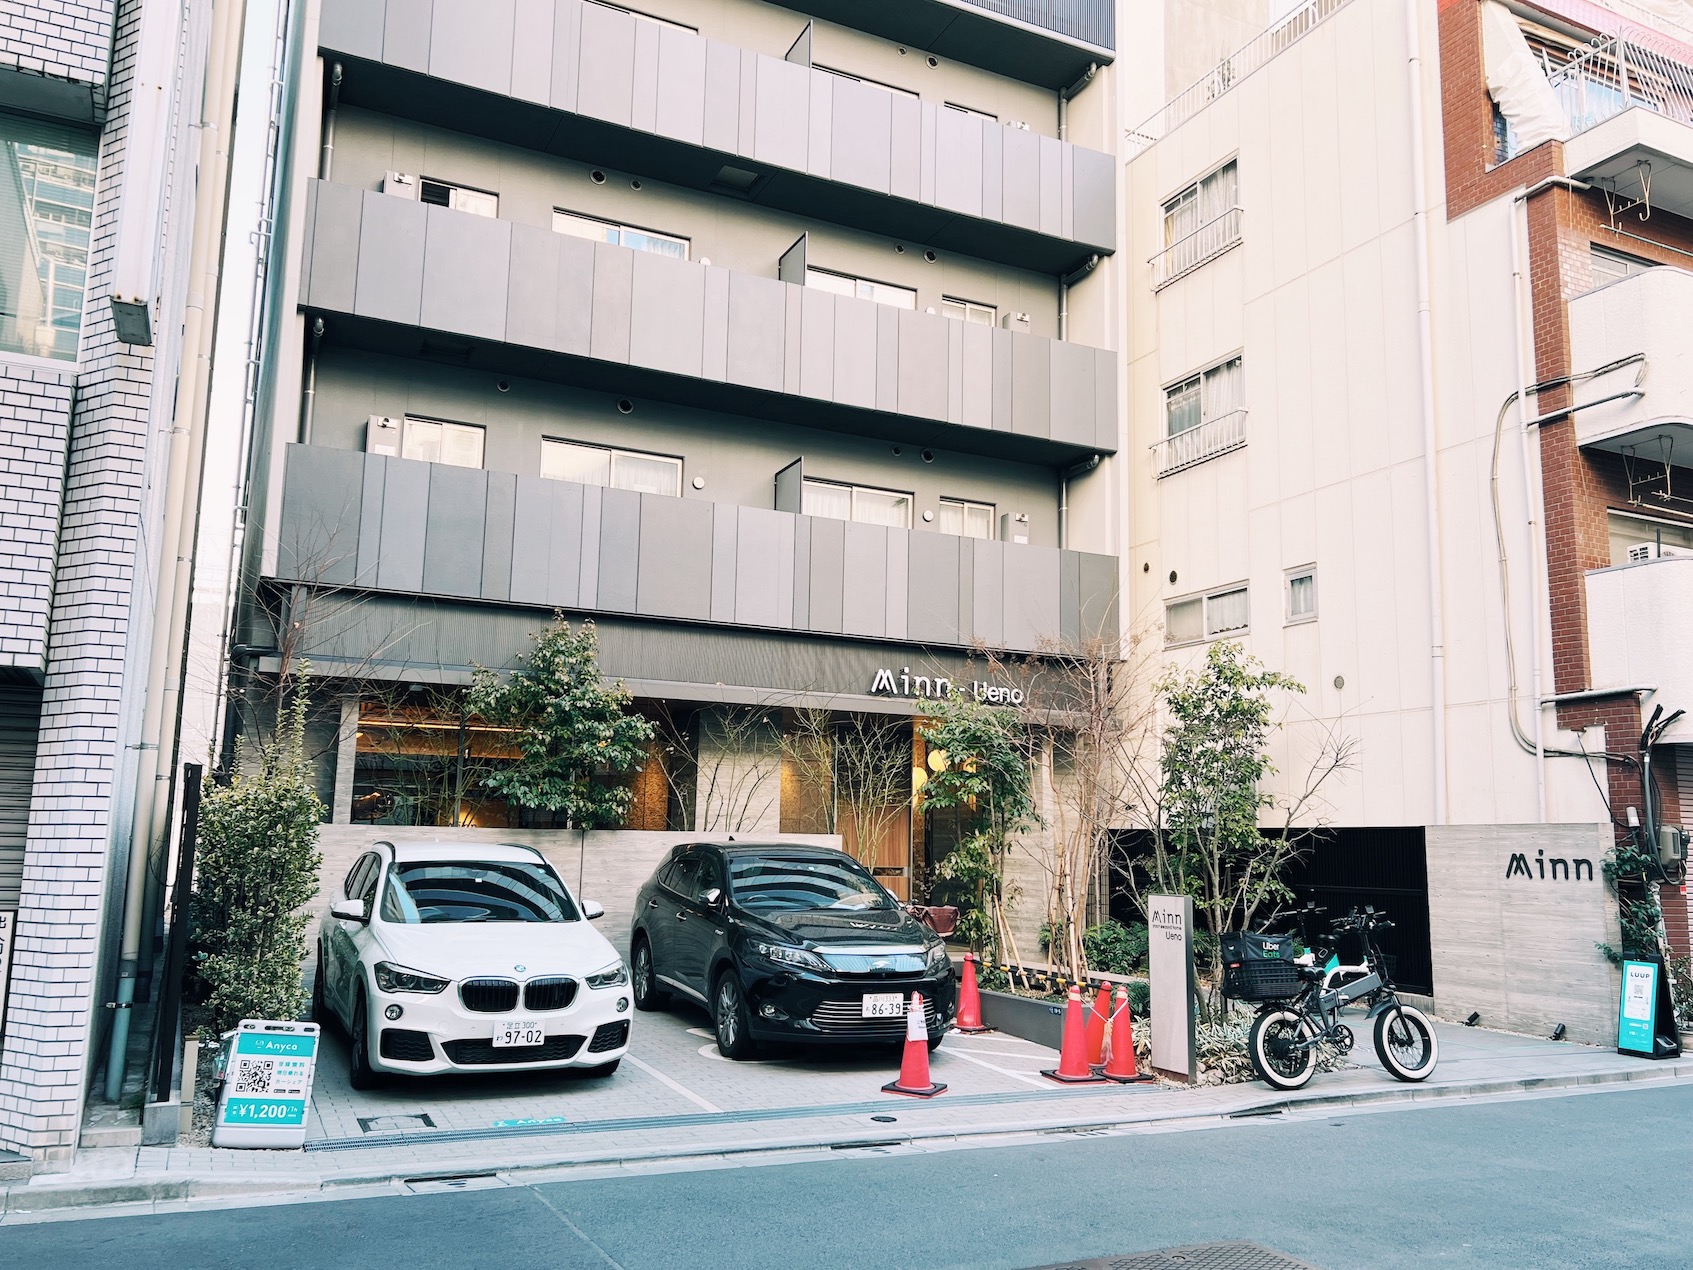 [東京住宿]上野Minn Ueno公寓式飯店 房間超大 附廚房 離上野車站走路不到10分鐘